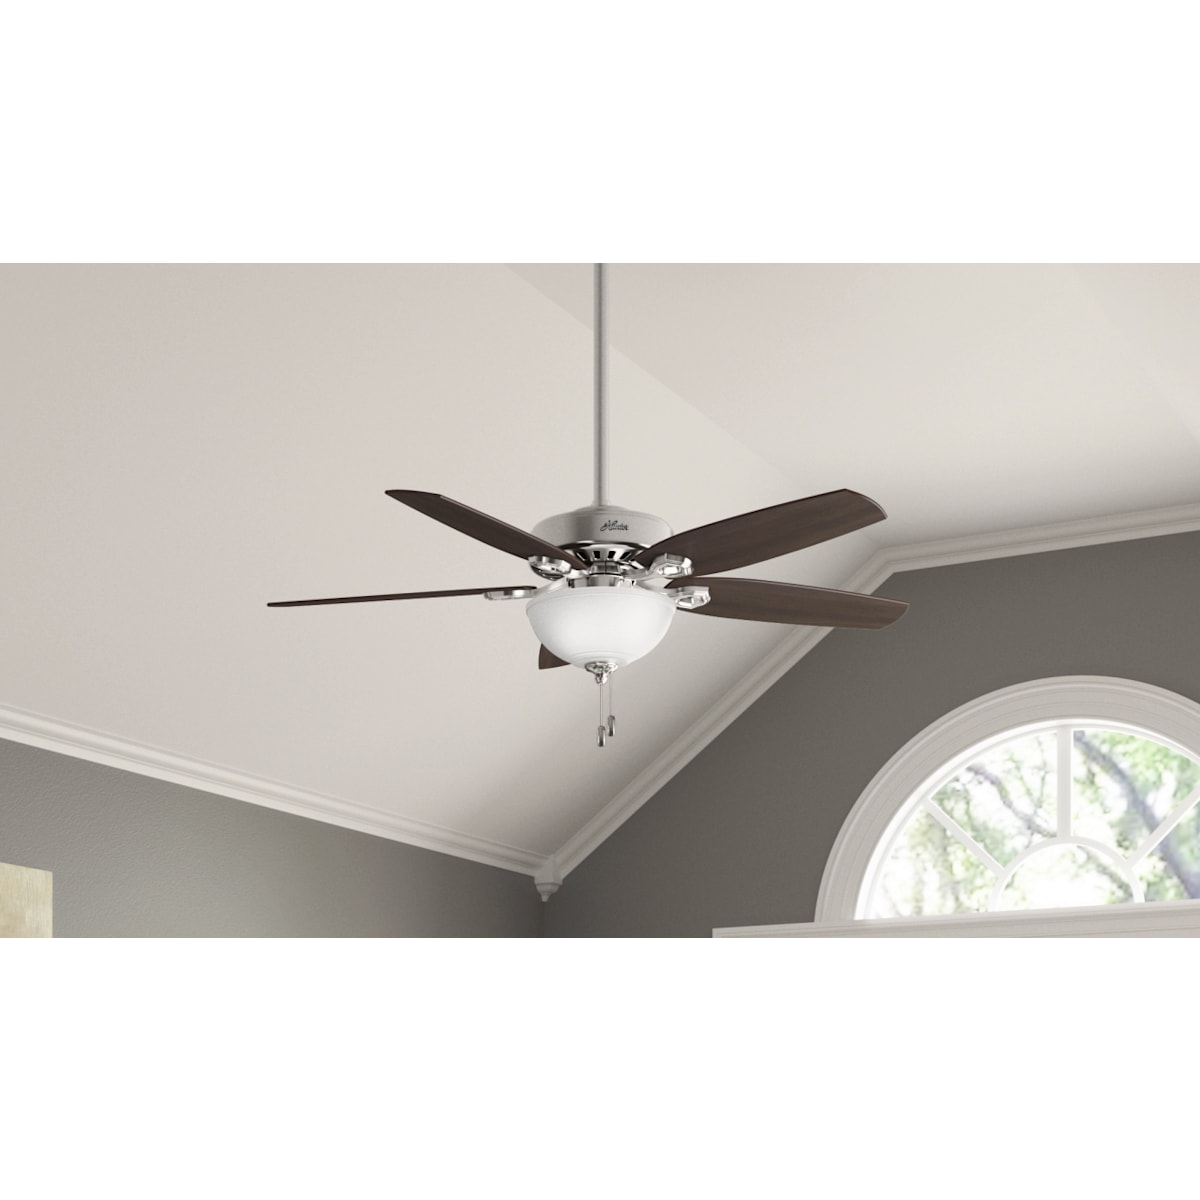 Builder Deluxe with Light 52 inch Ceiling Fan | Hunter Fan